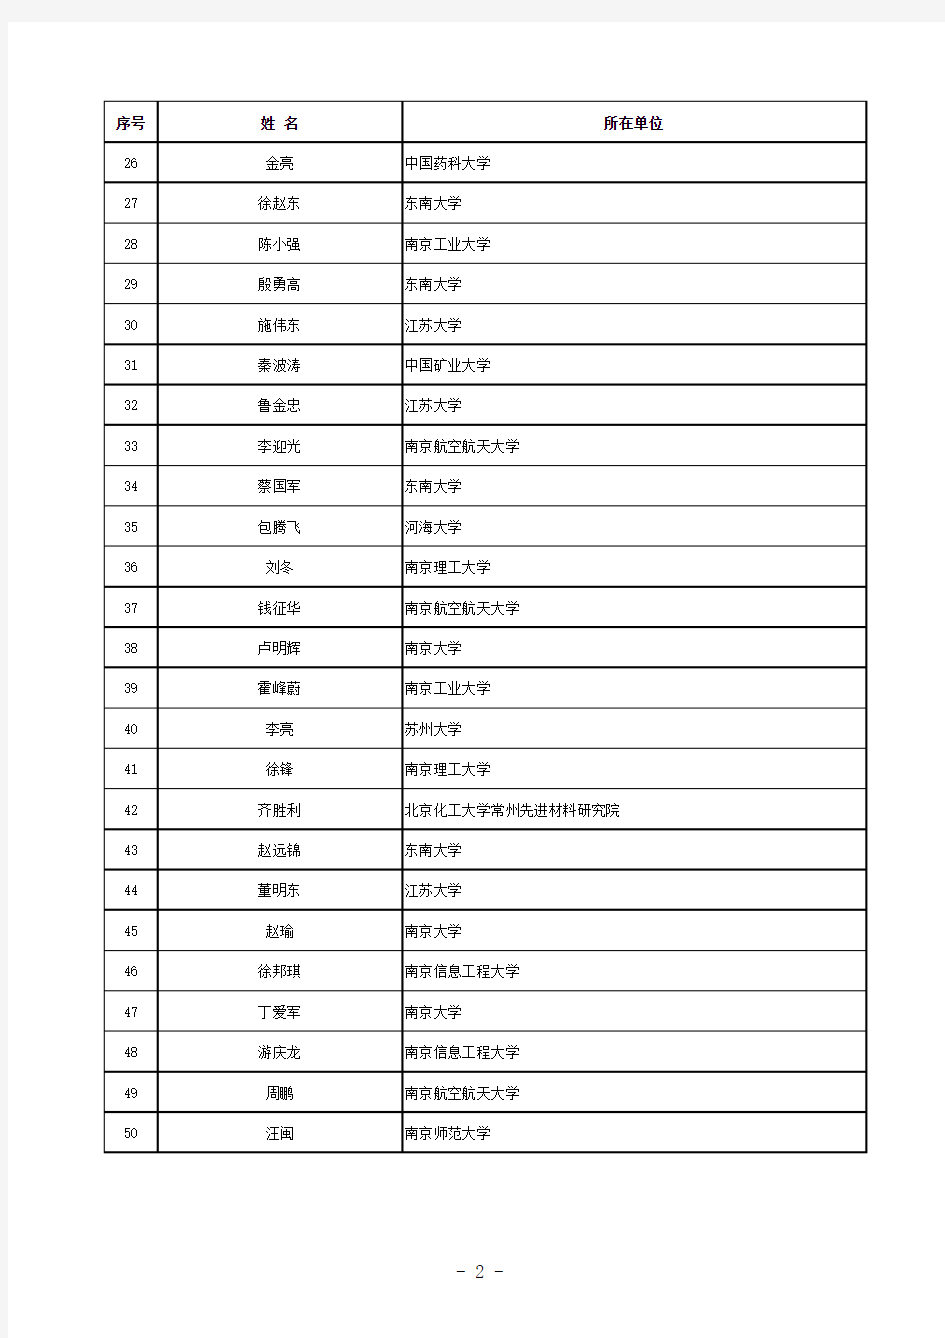 2014年江苏省自然科学基金项目名单